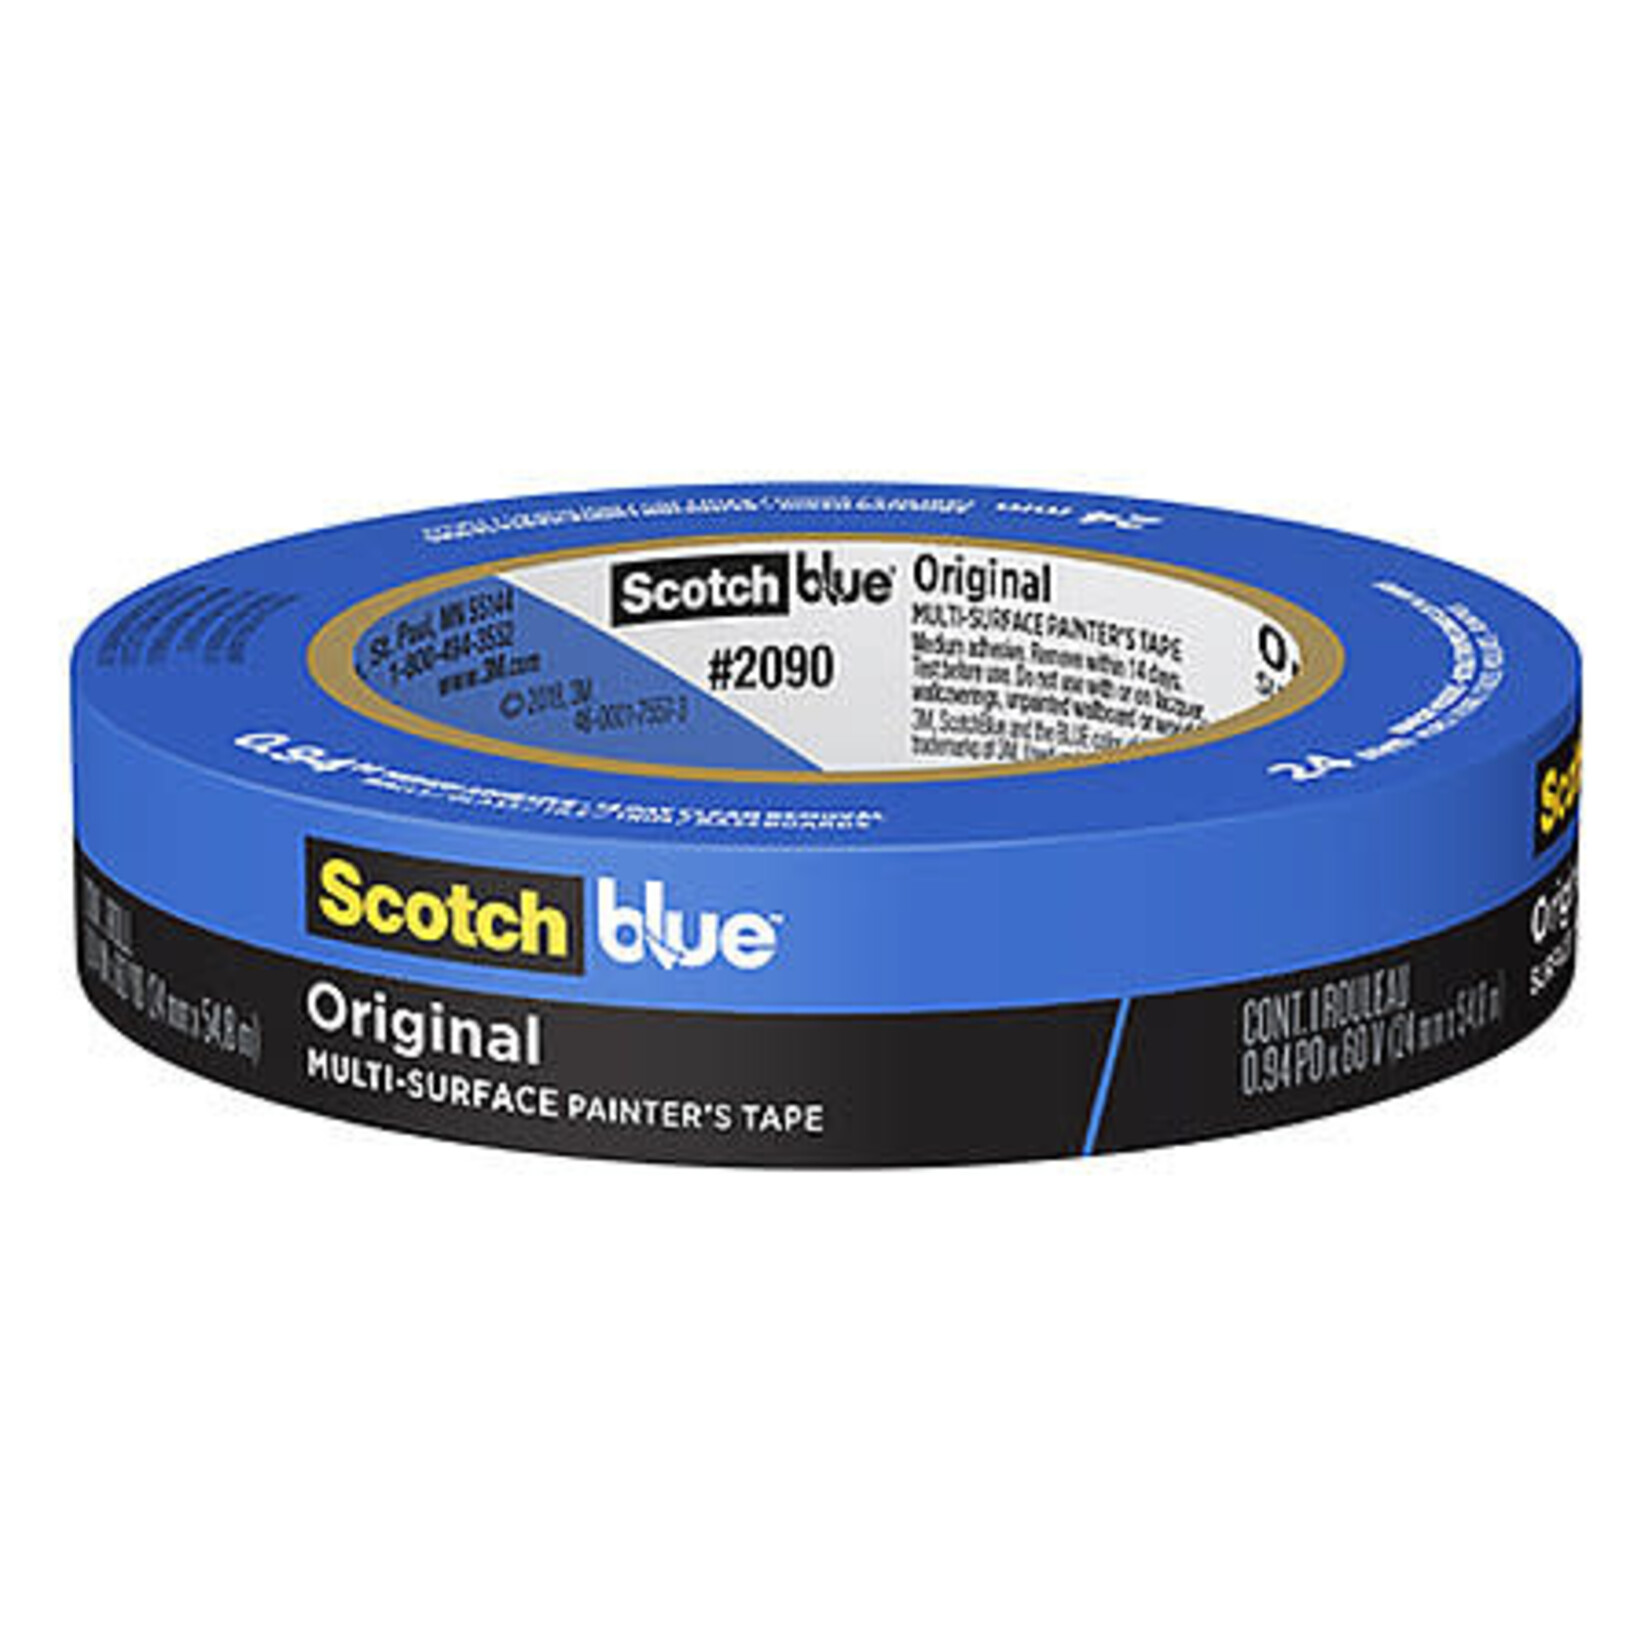 Scotch 3m Painters Tape, Blue - Delicate 1.88''X60Y